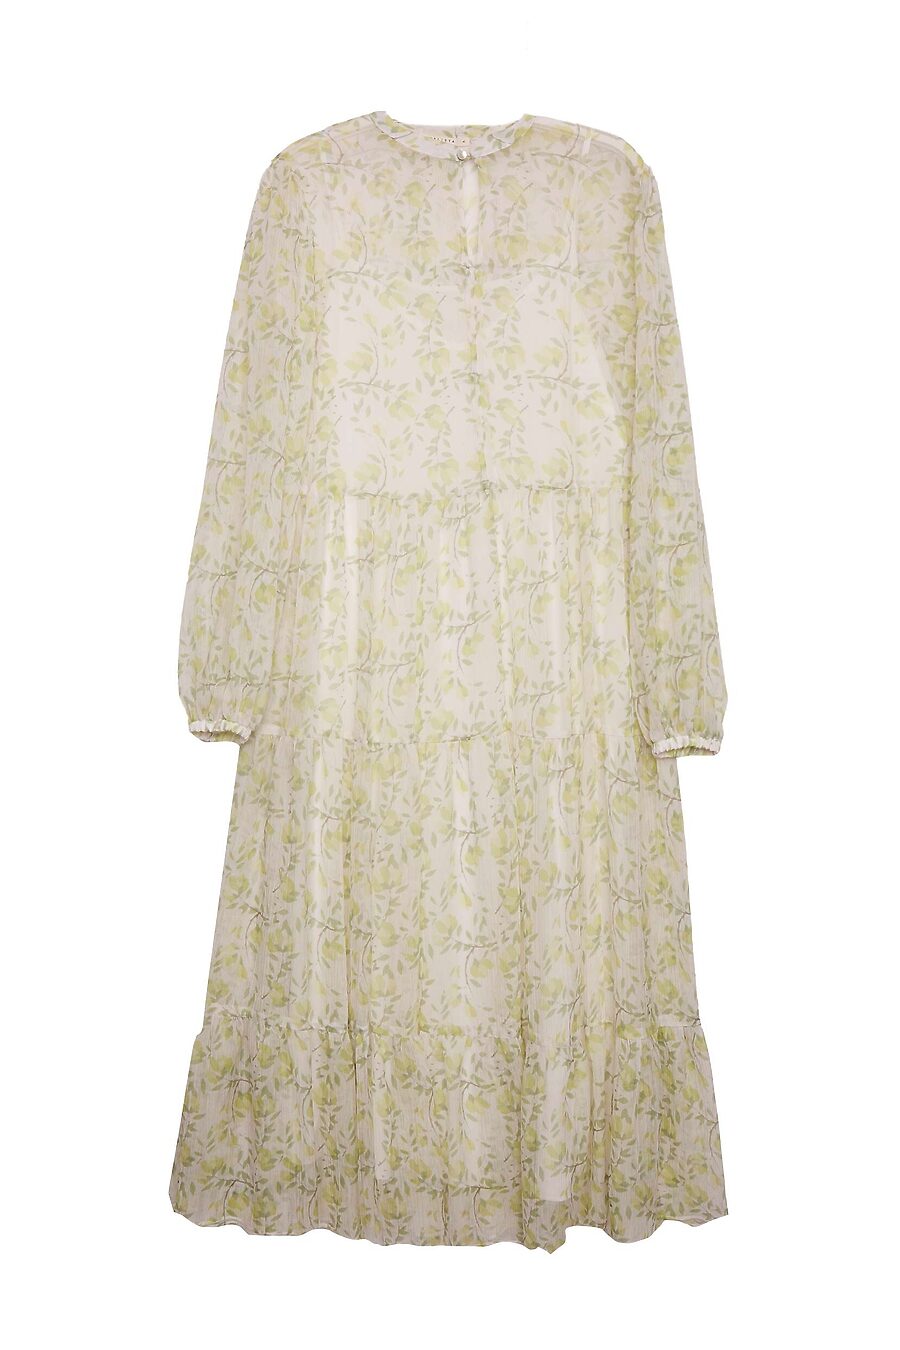 Платье для женщин CALISTA 741108 купить оптом от производителя. Совместная покупка женской одежды в OptMoyo